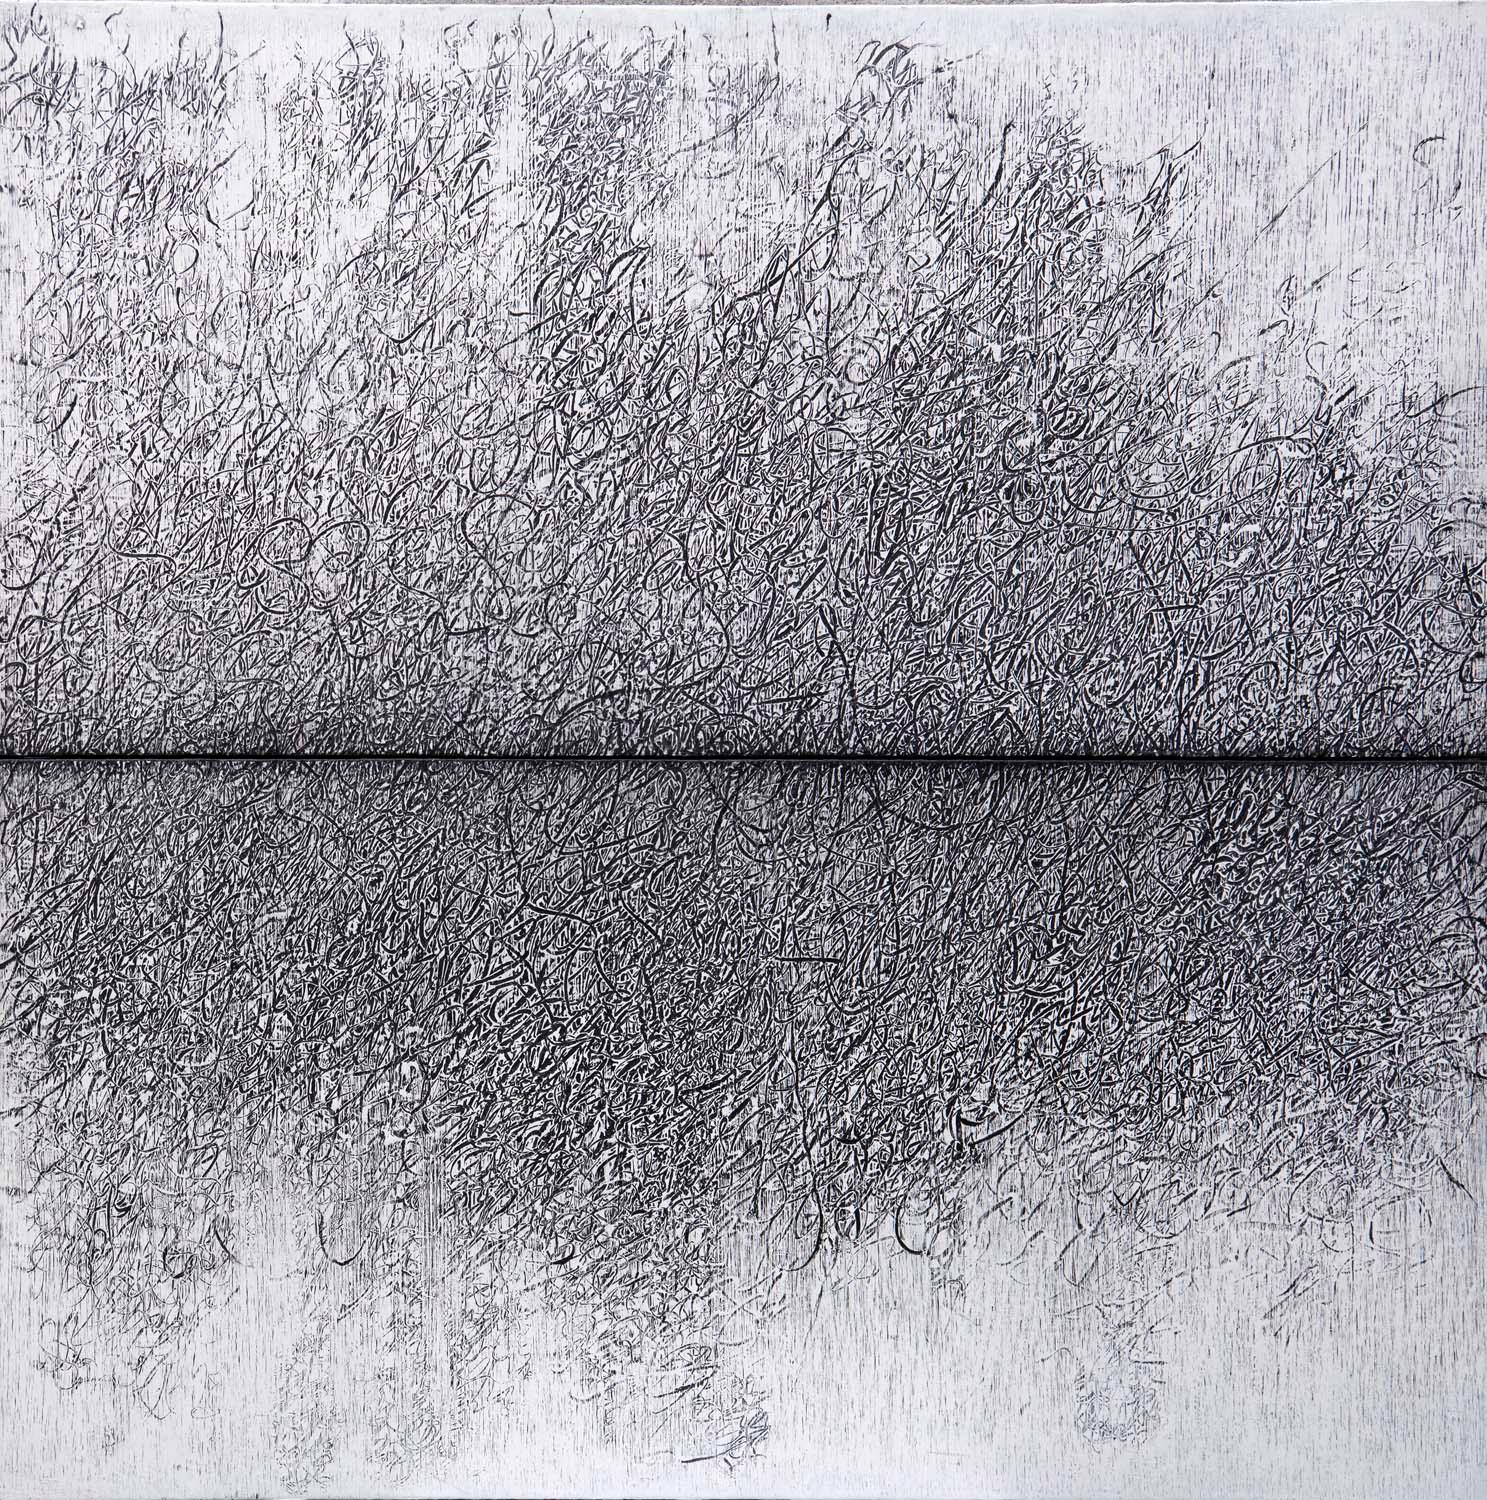 Abstract Painting Bill Maggio - Grande table géométrique contemporaine noire et blanche